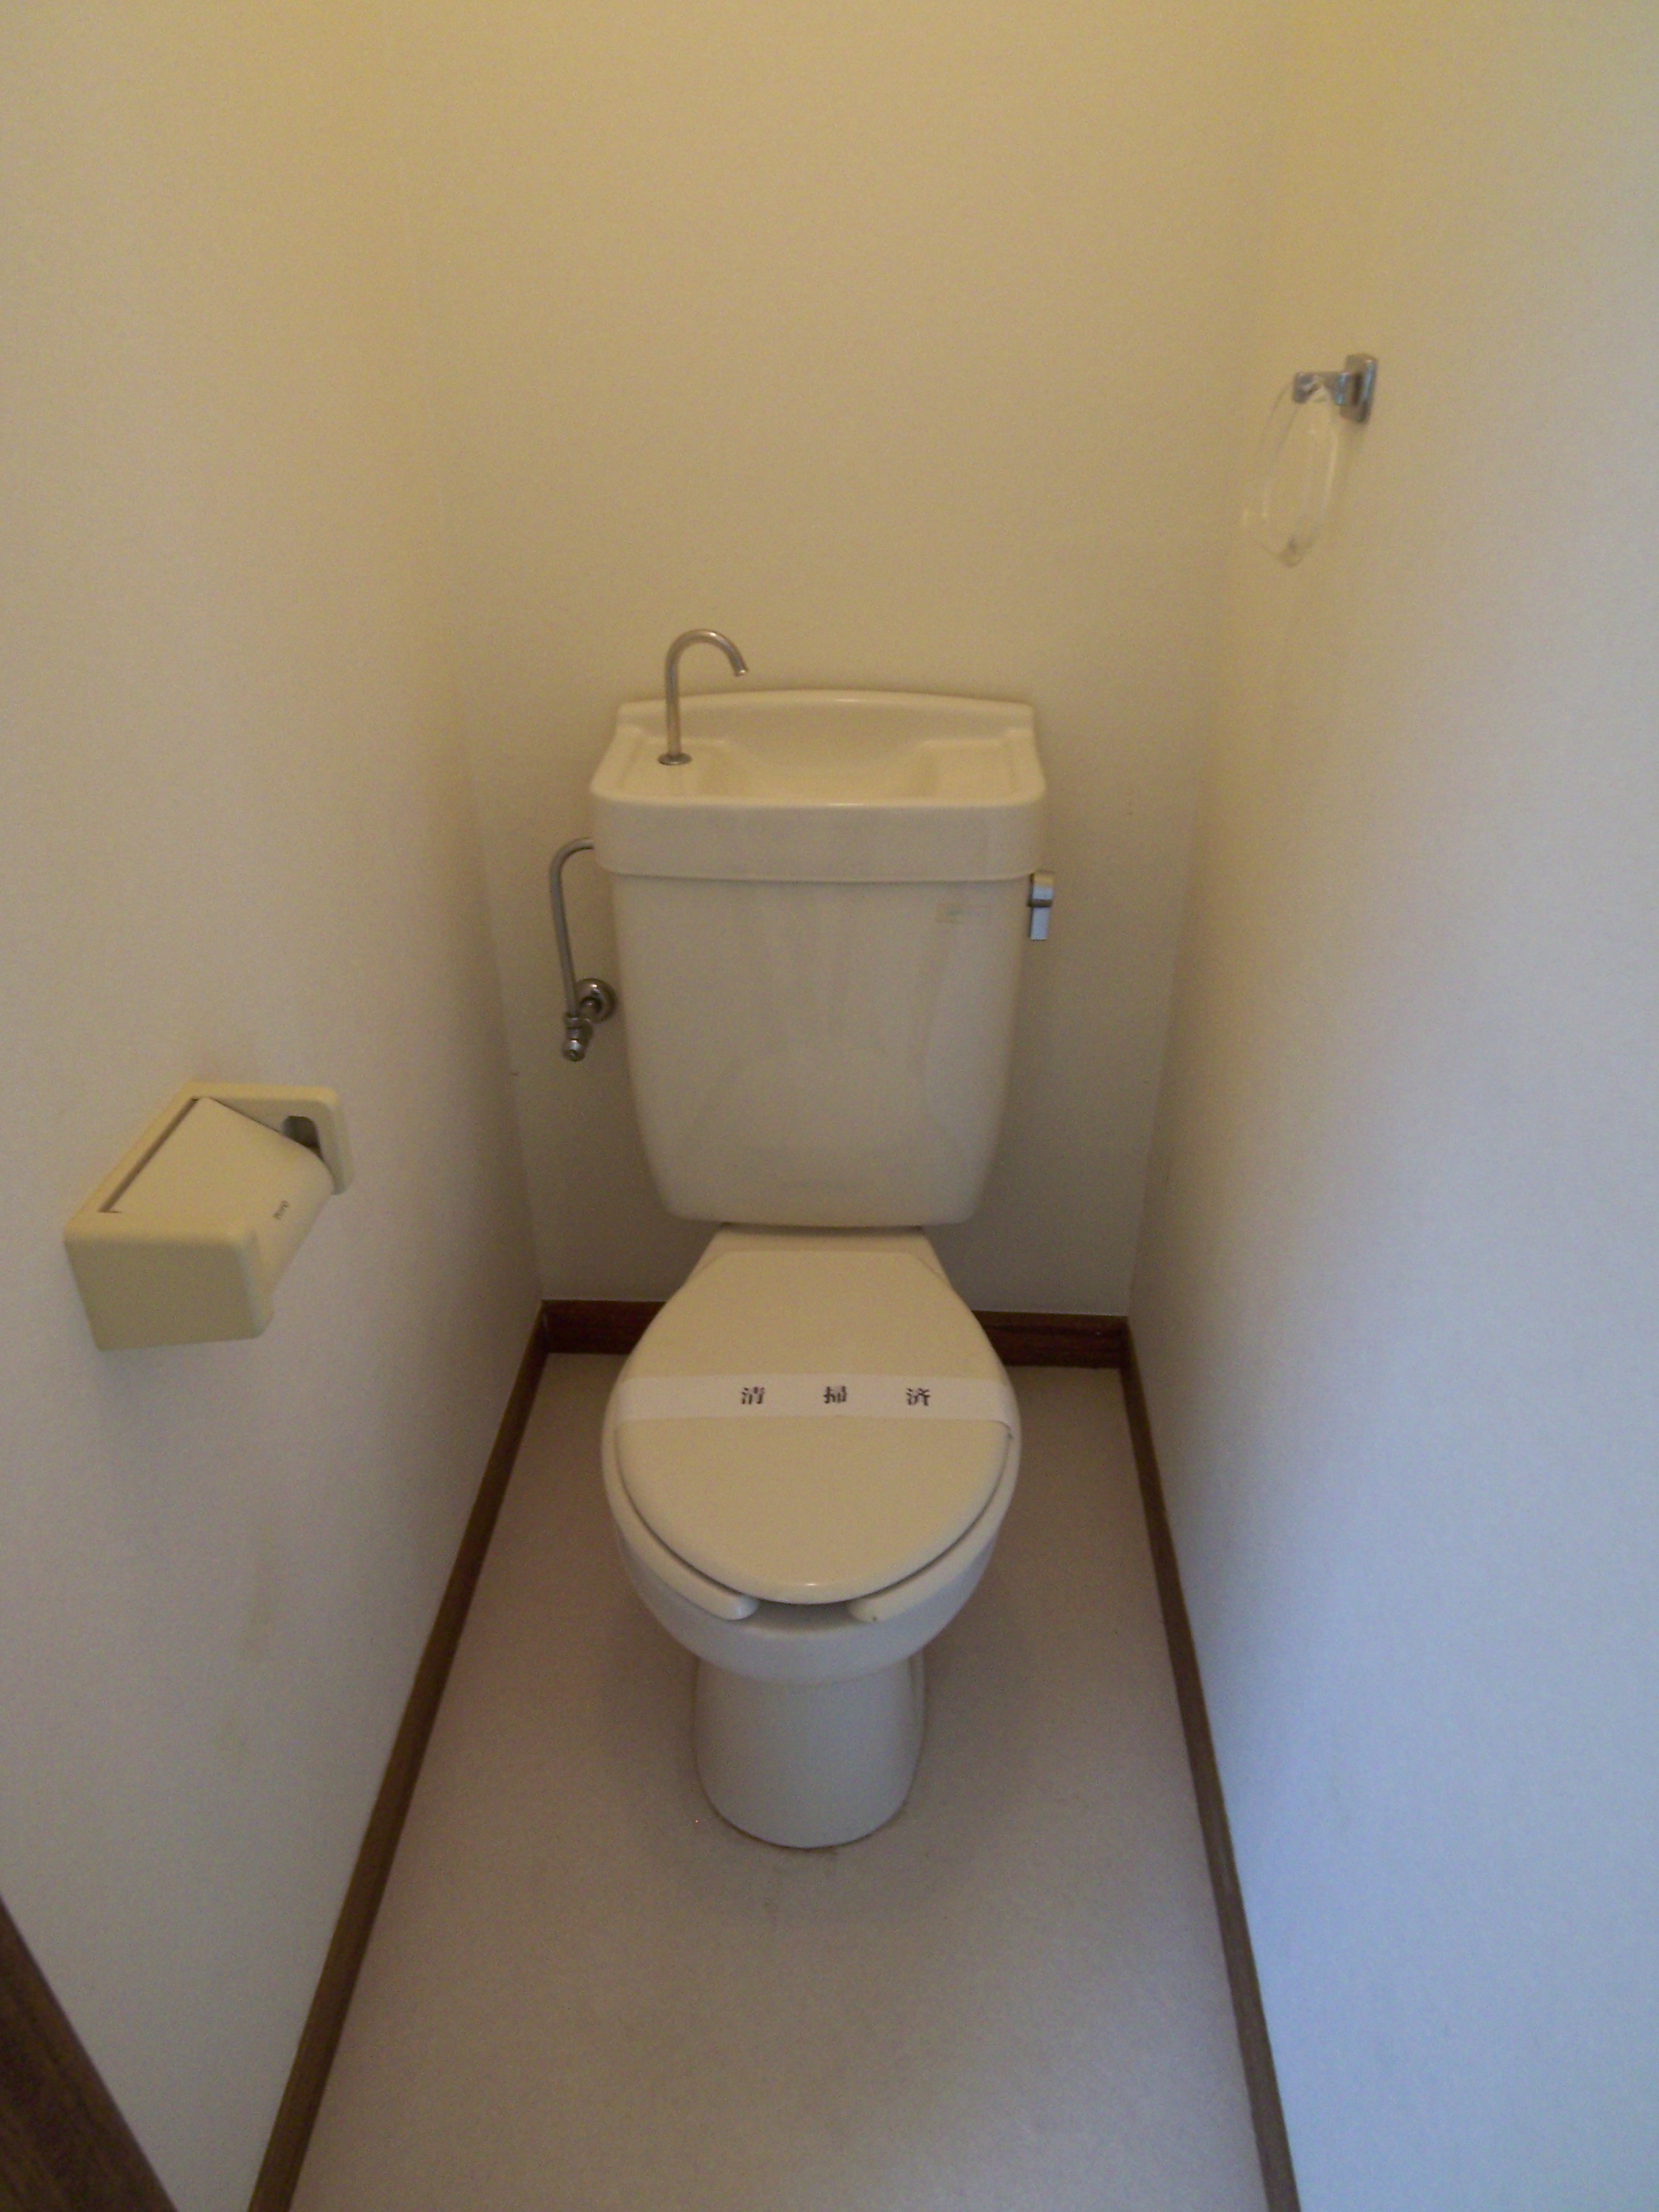 Toilet. Calm space! toilet